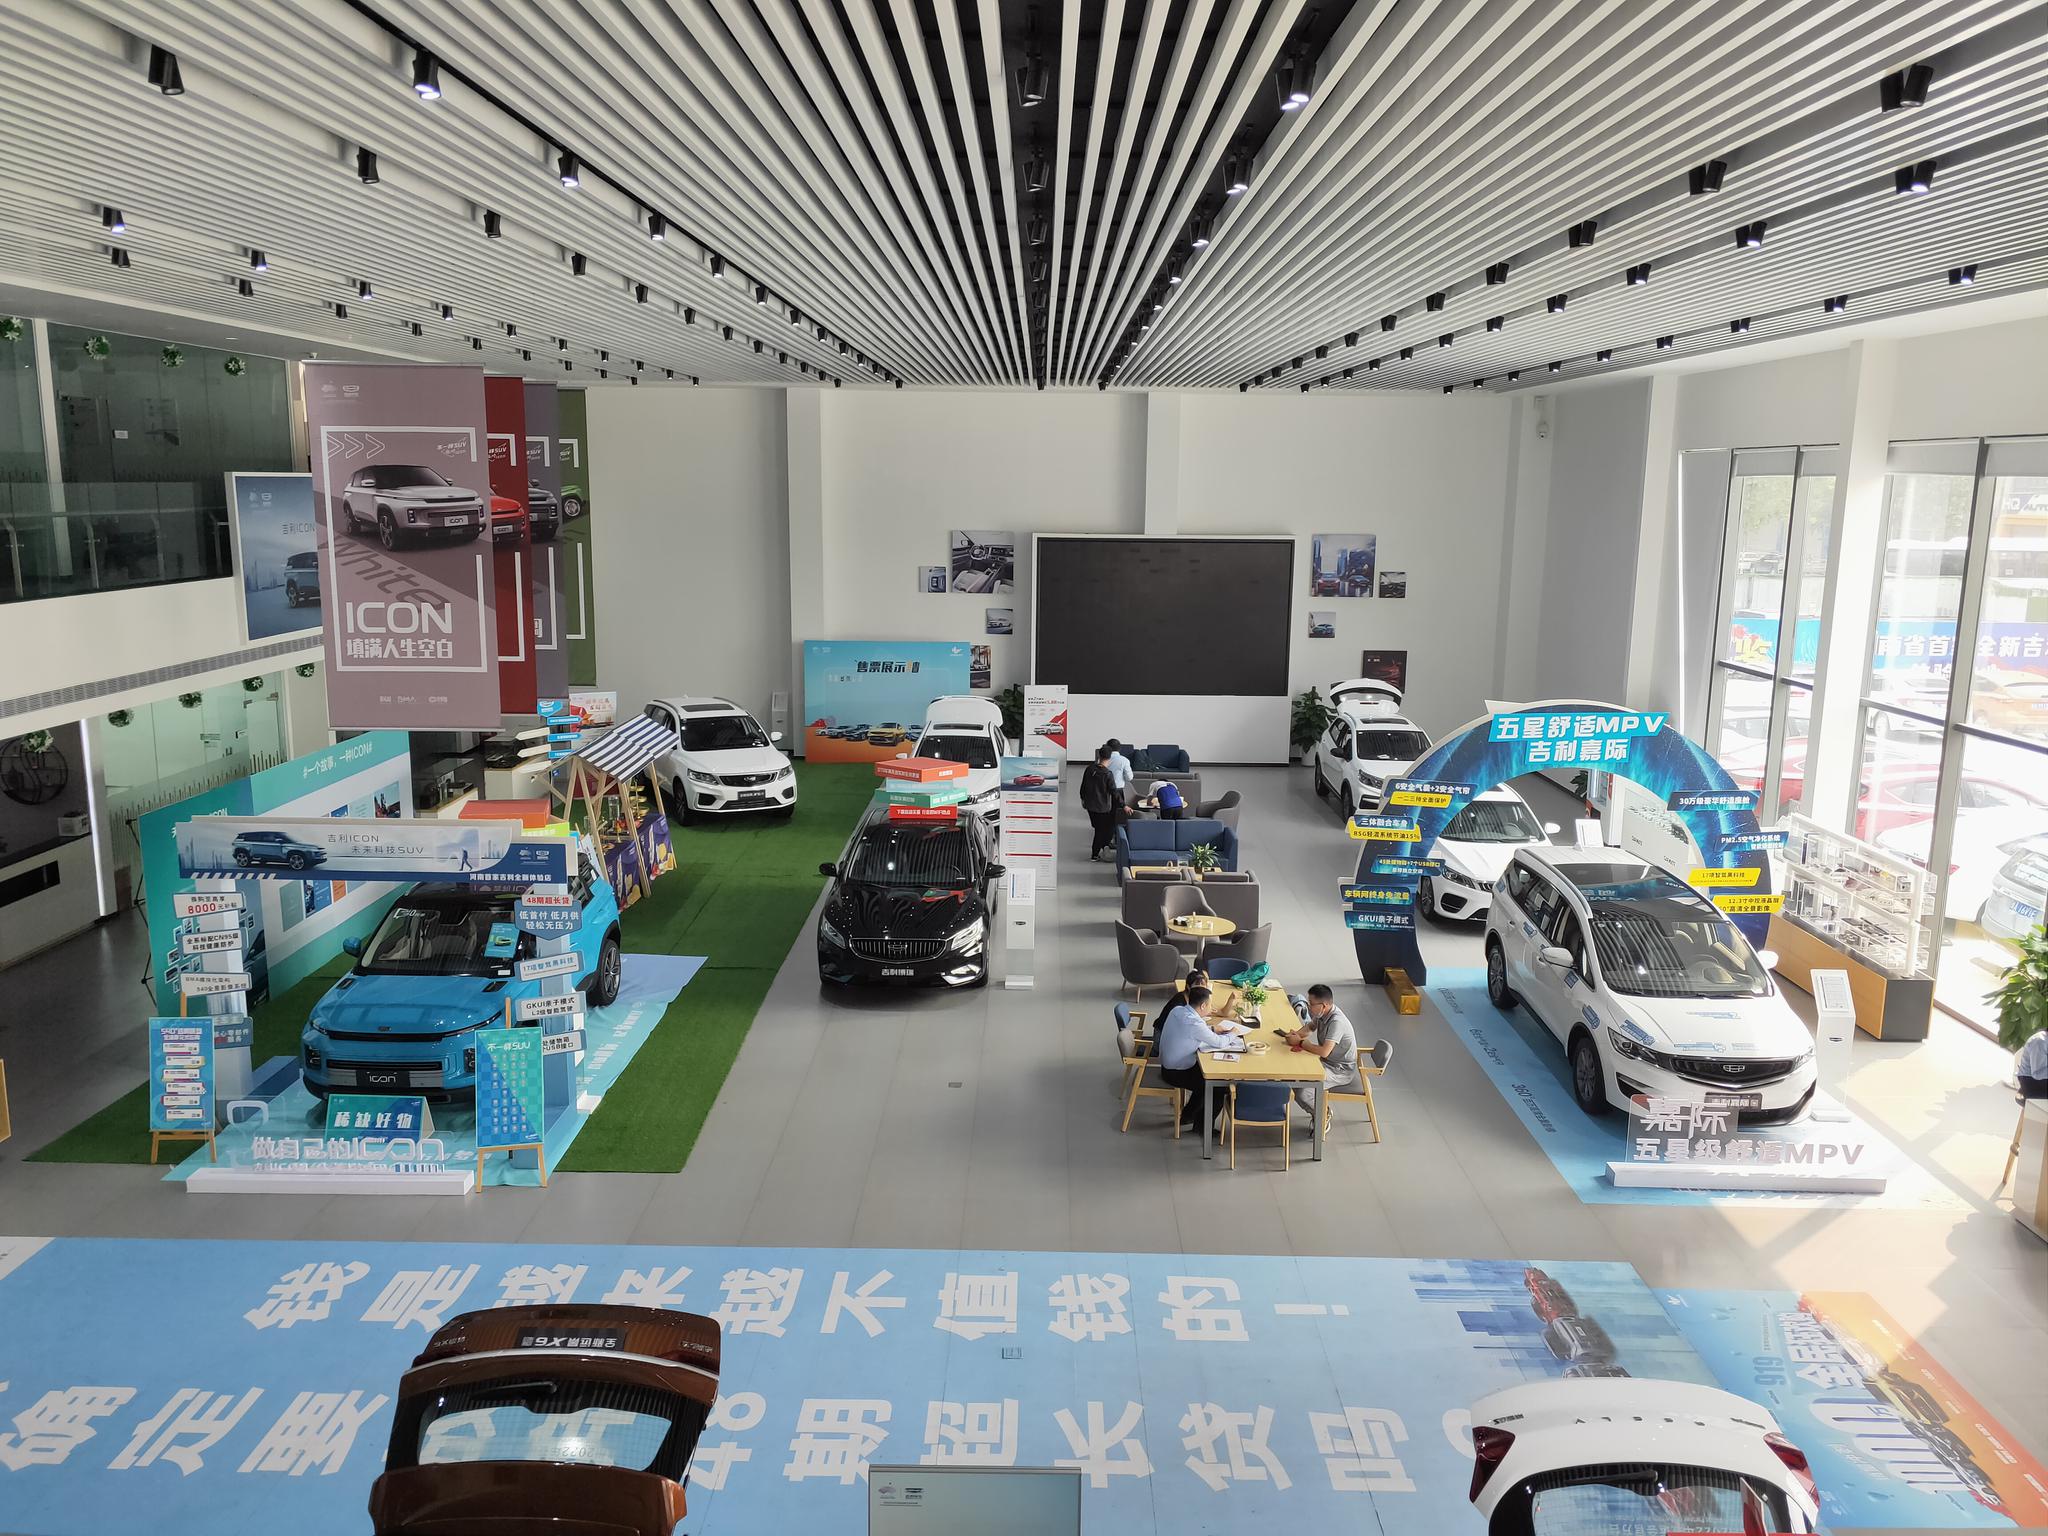 生态家模板,河南首家吉利汽车全新形象店已开放